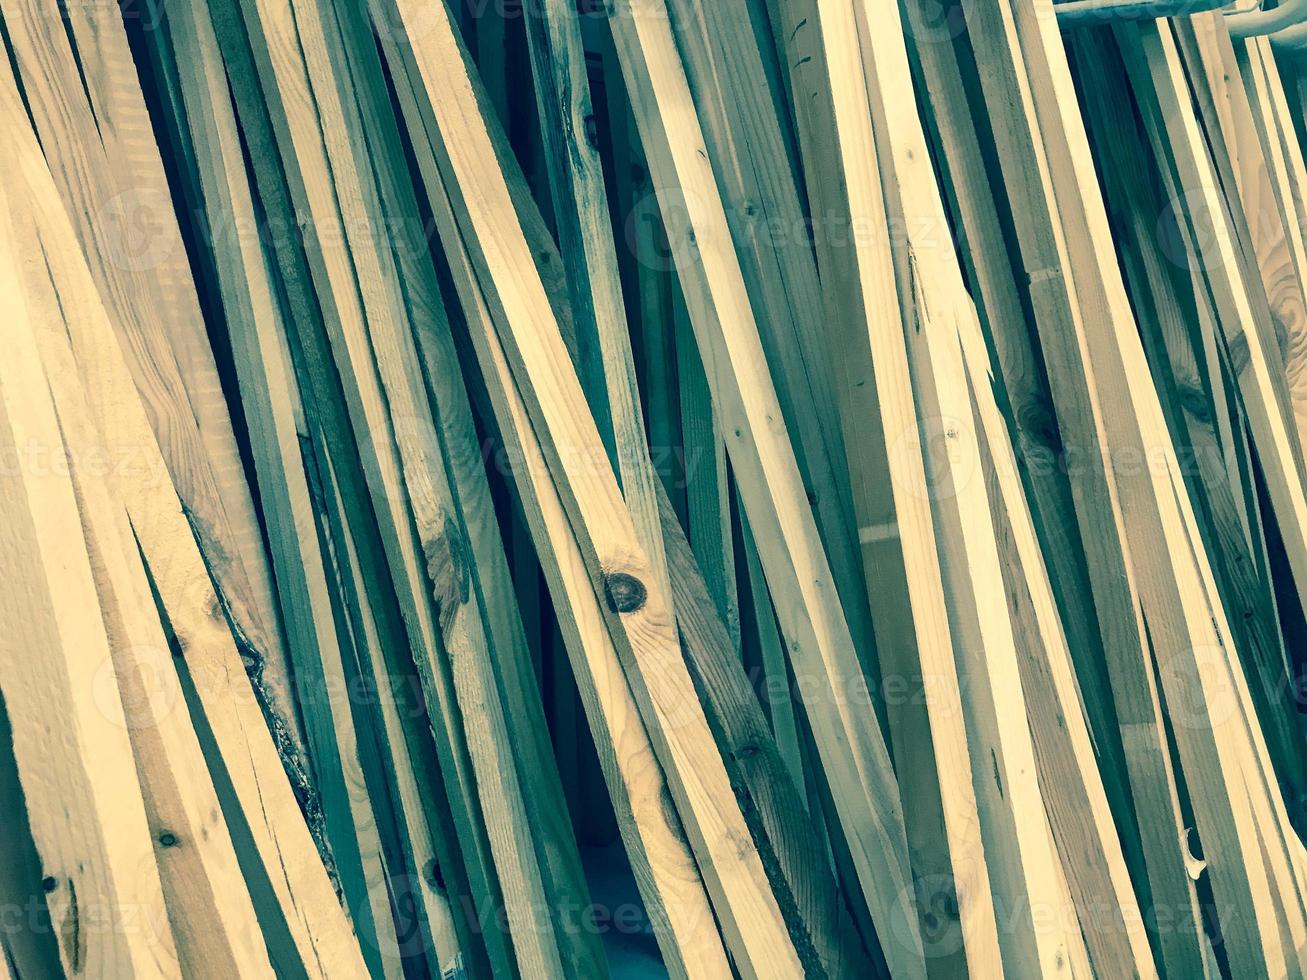 textura de madeira marrom inclinado na diagonal natural placas de madeira varas com nós. o fundo foto